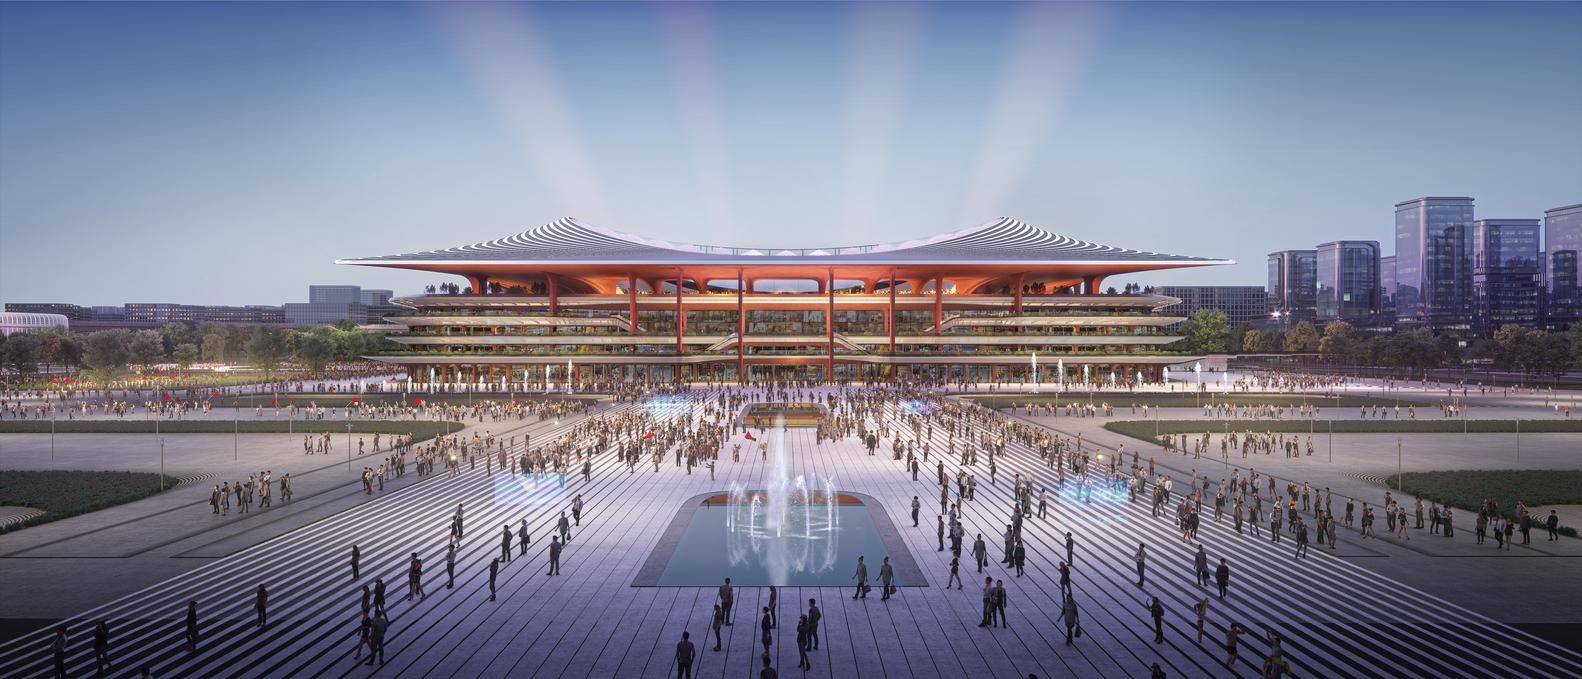 Невероятный проект стадиона в Китае от архитекторов Захи Хадид –впечатляющие фото